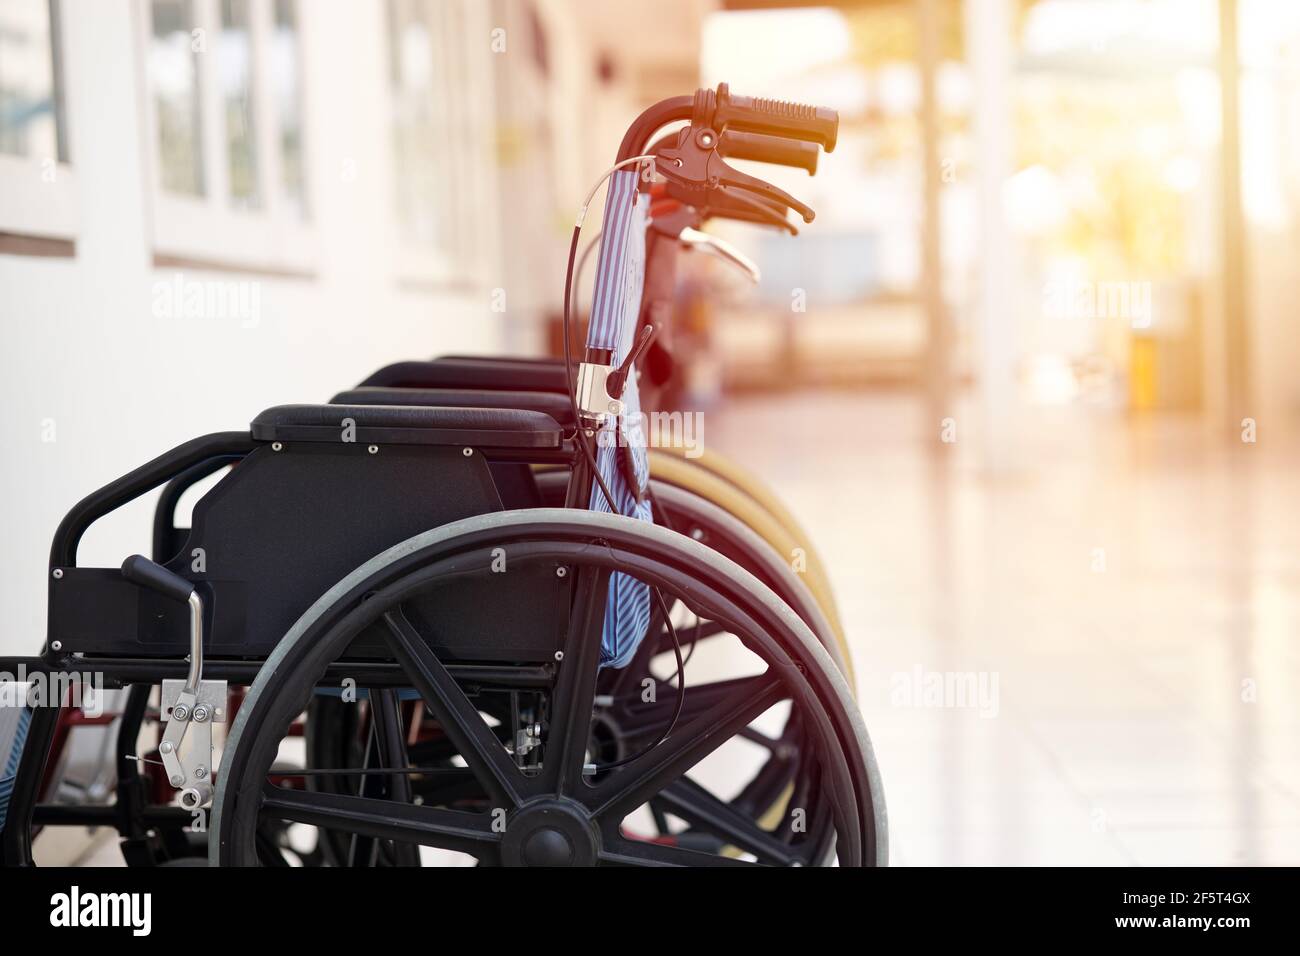 Rollstuhl, ein Stuhl mit Rädern für behinderte Menschen und Krankenhaus Krankheit Verletzungen Patientenversorgung. Stockfoto